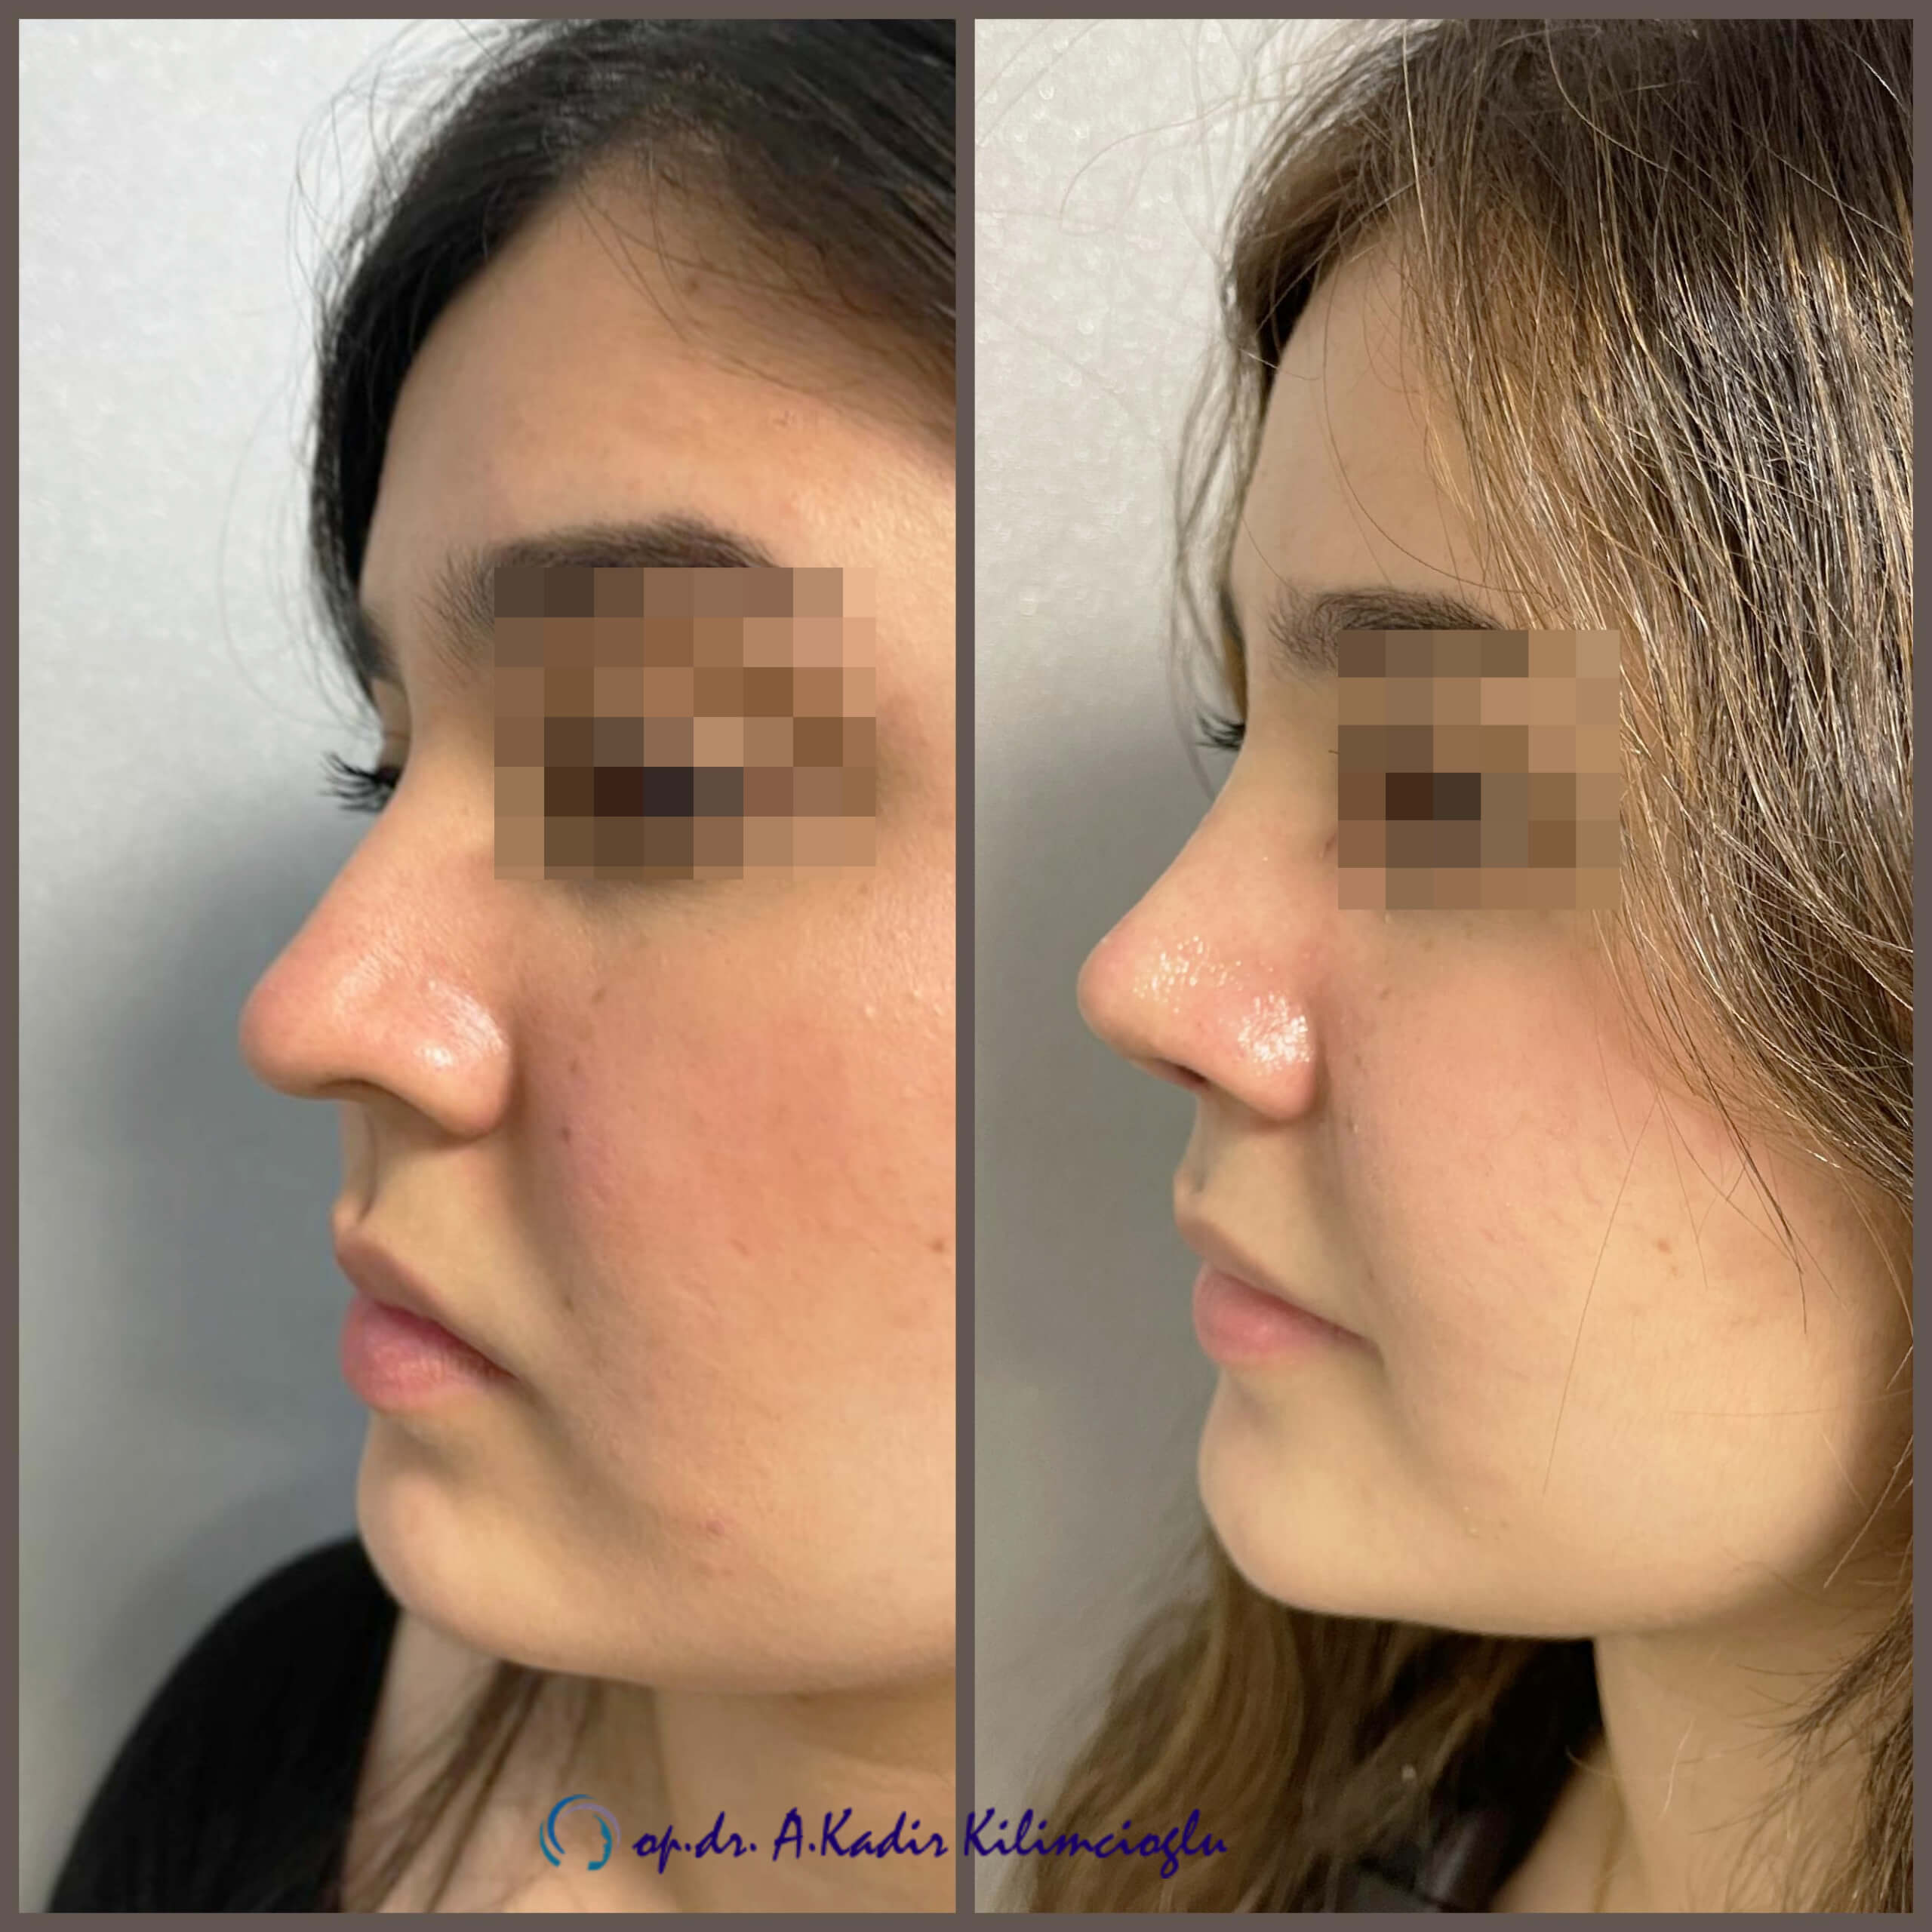 Womens Nose Aesthetics Nose Aesthetics Istanbul Nose Surgery Op Dr A Kadir Kilimcioglu